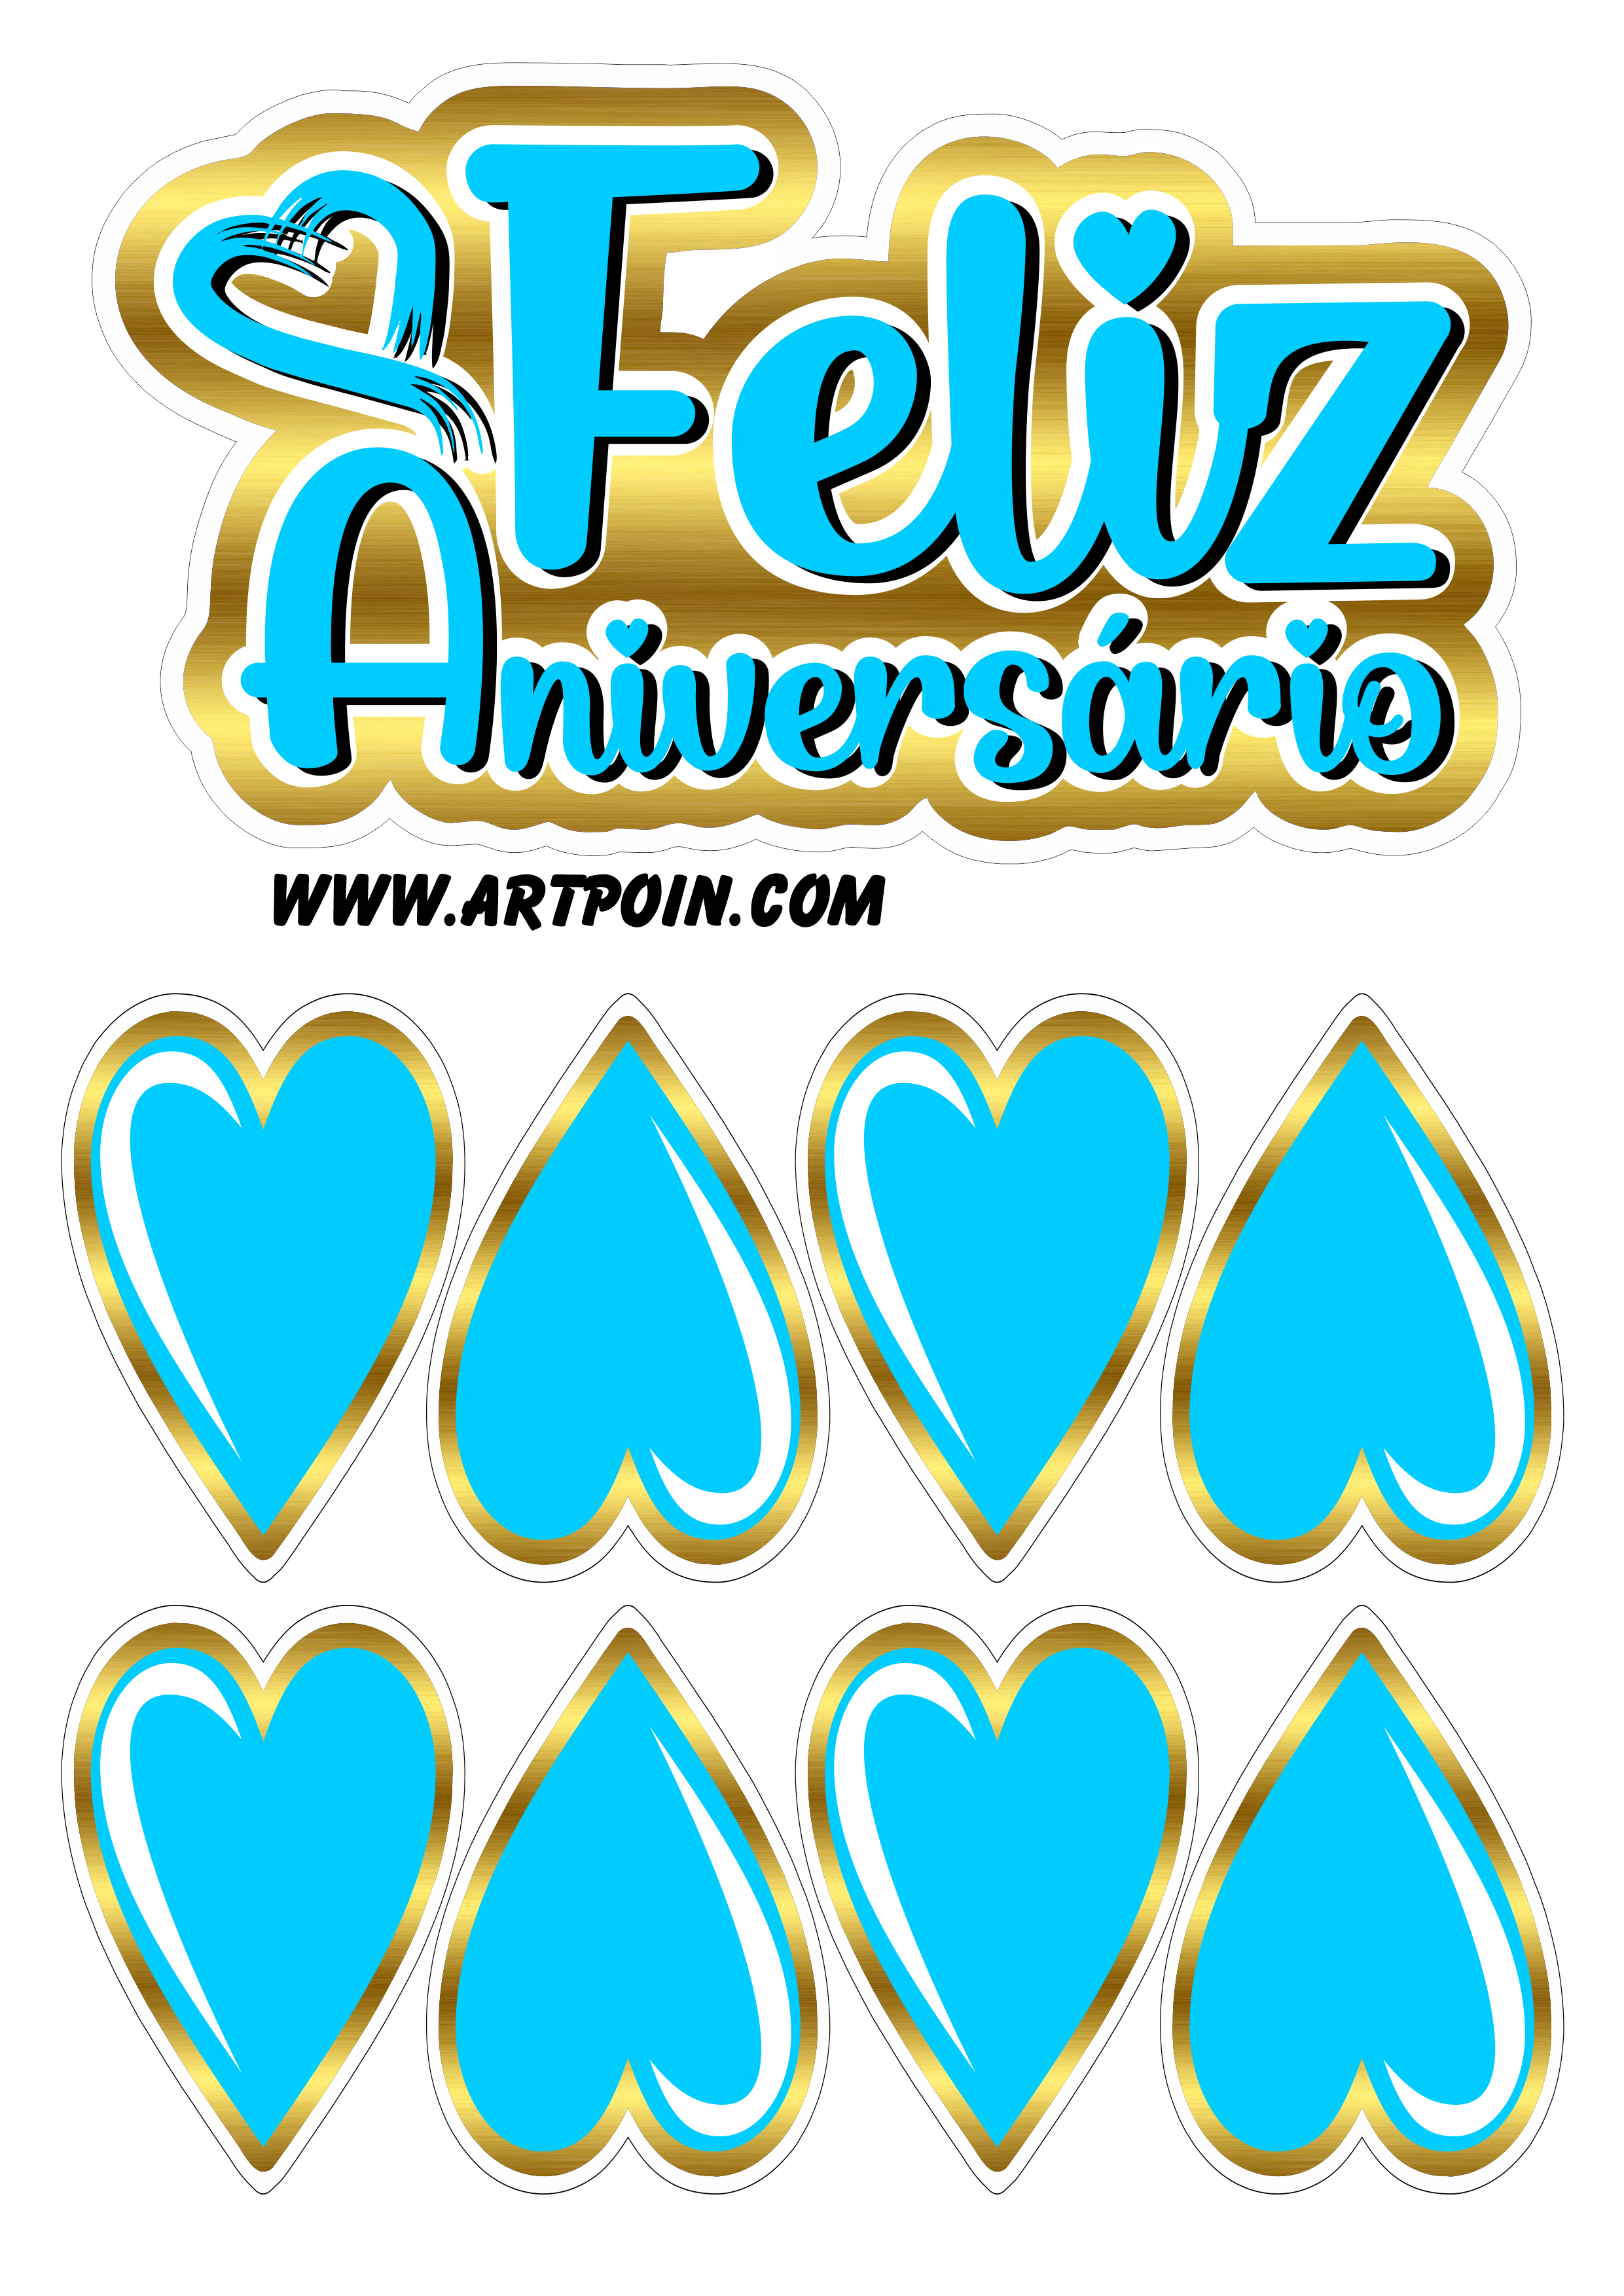 Topo de bolo dourado com azul corações feliz aniversário renda extra com personalizados png